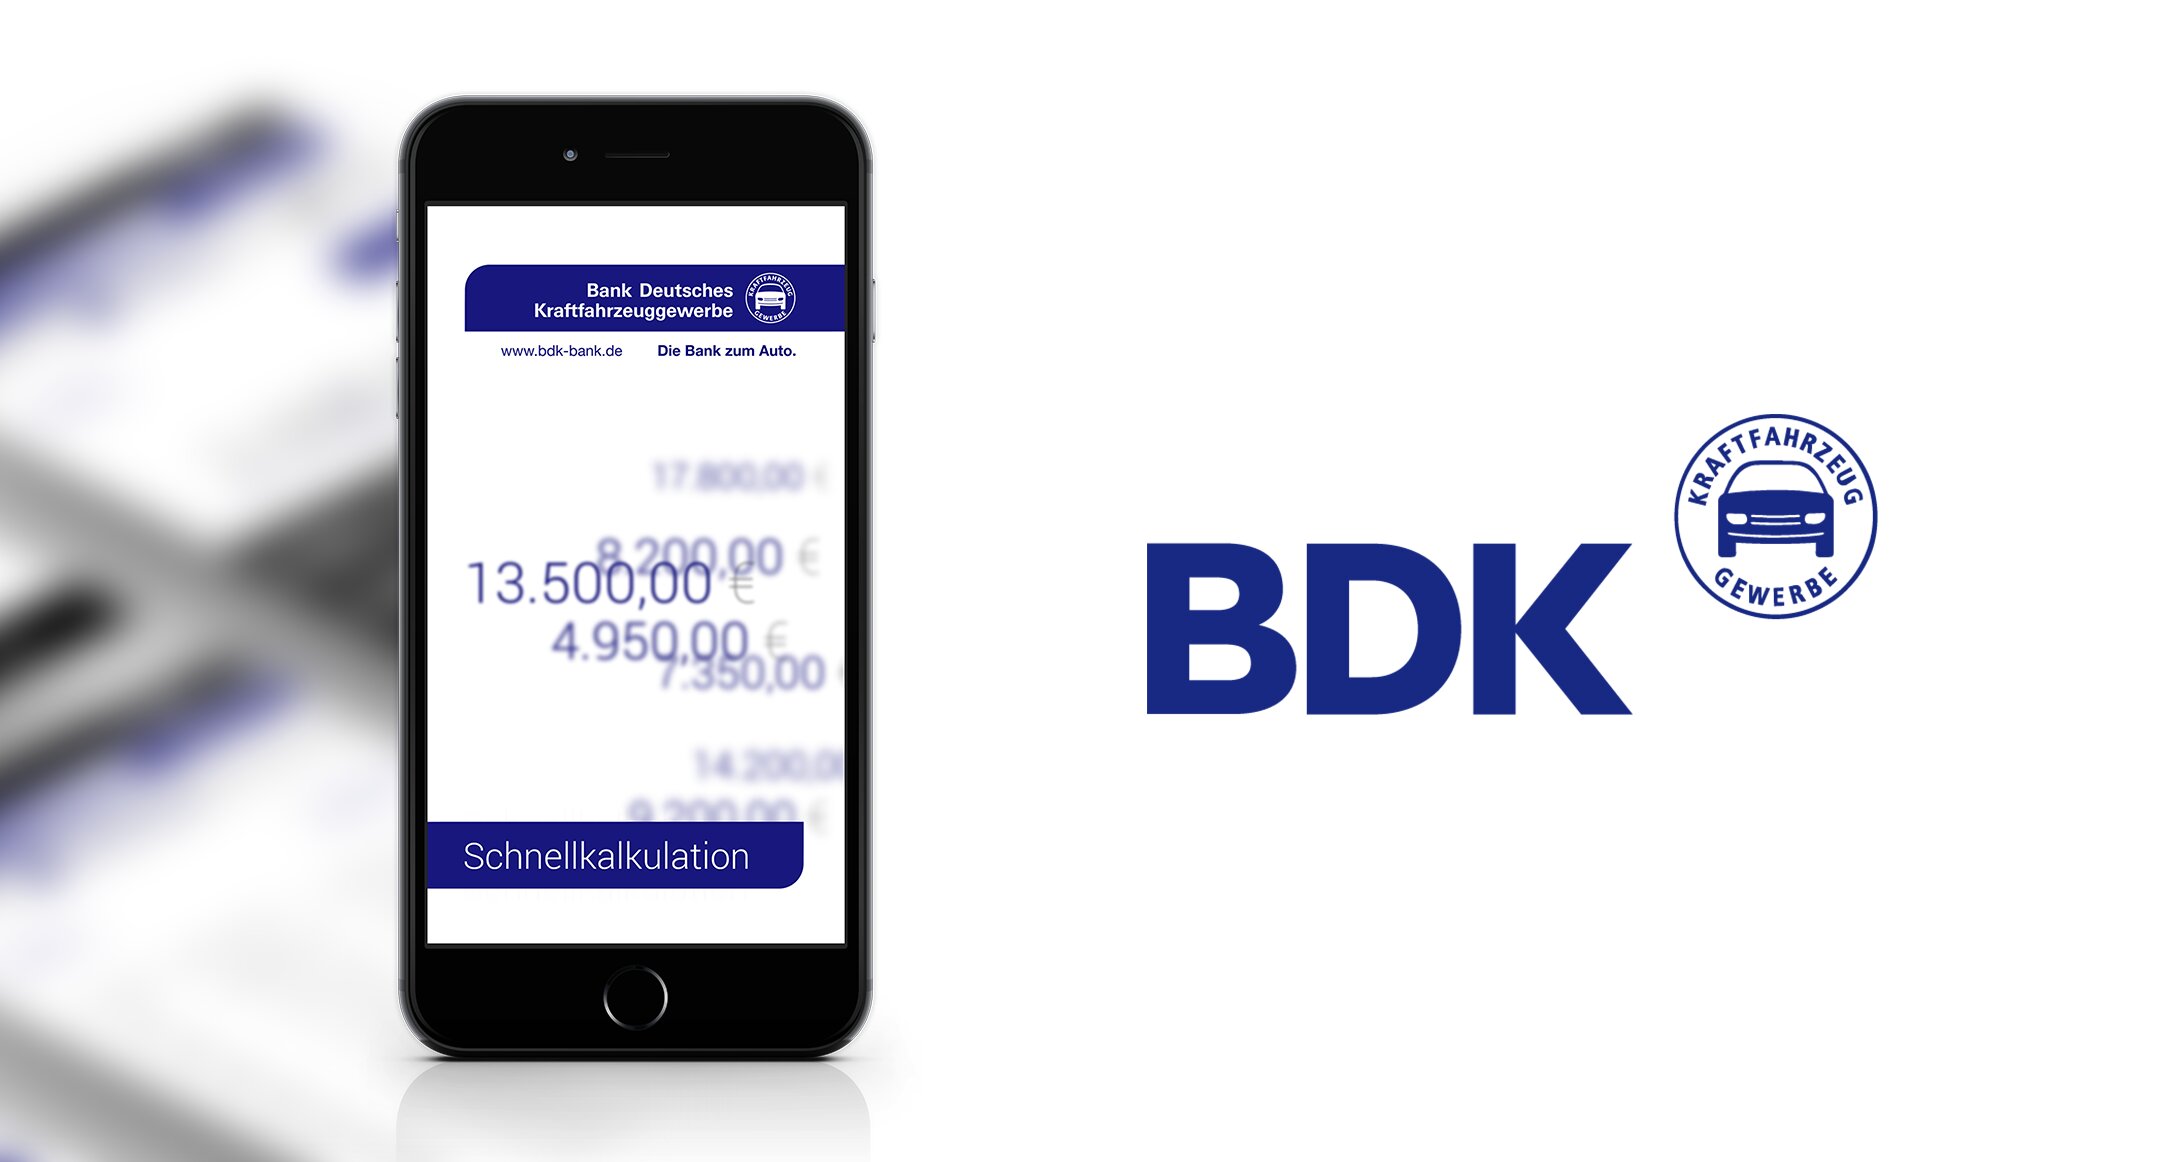 BDK Online Calculator App